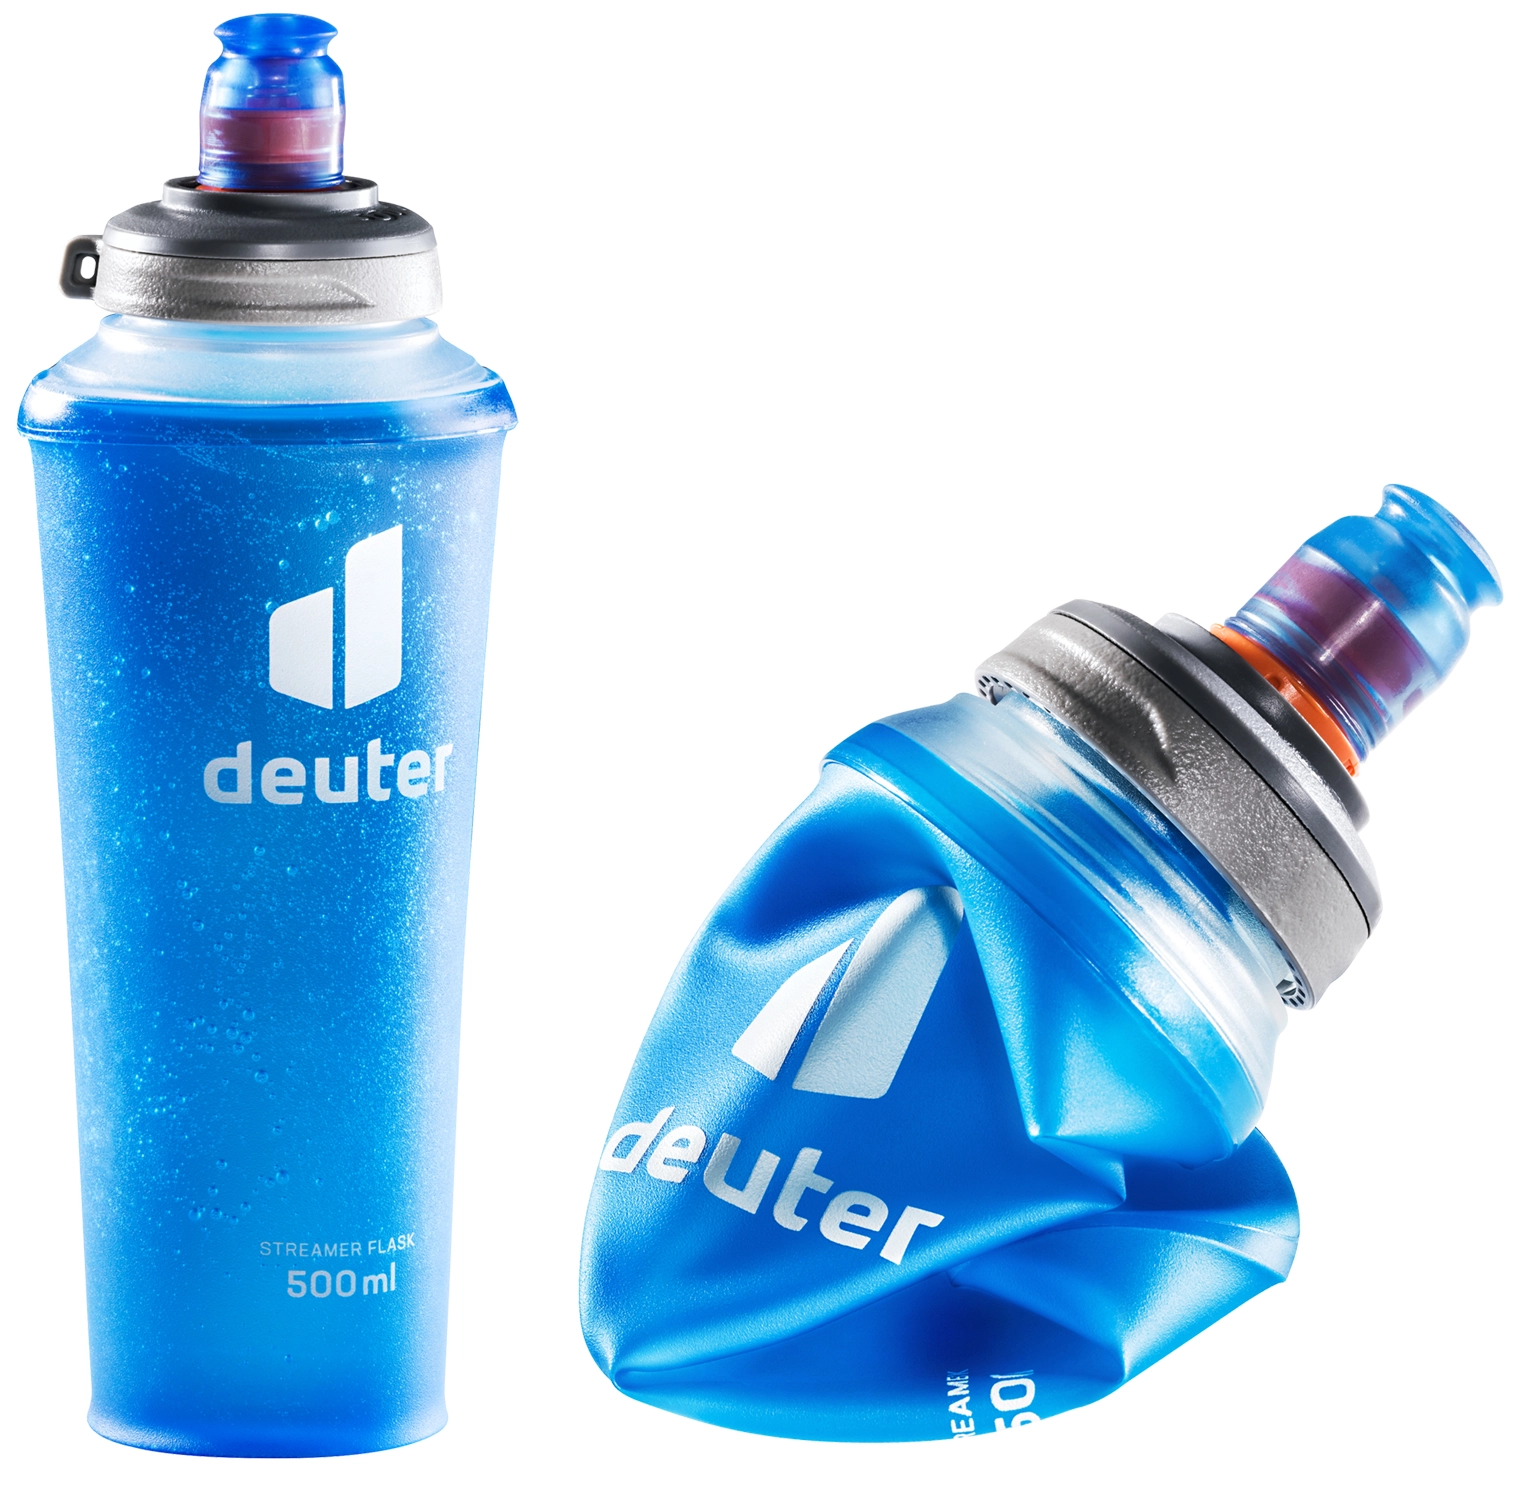 Deuter Streamer Flask - Trinkflasche, Faltflasche 